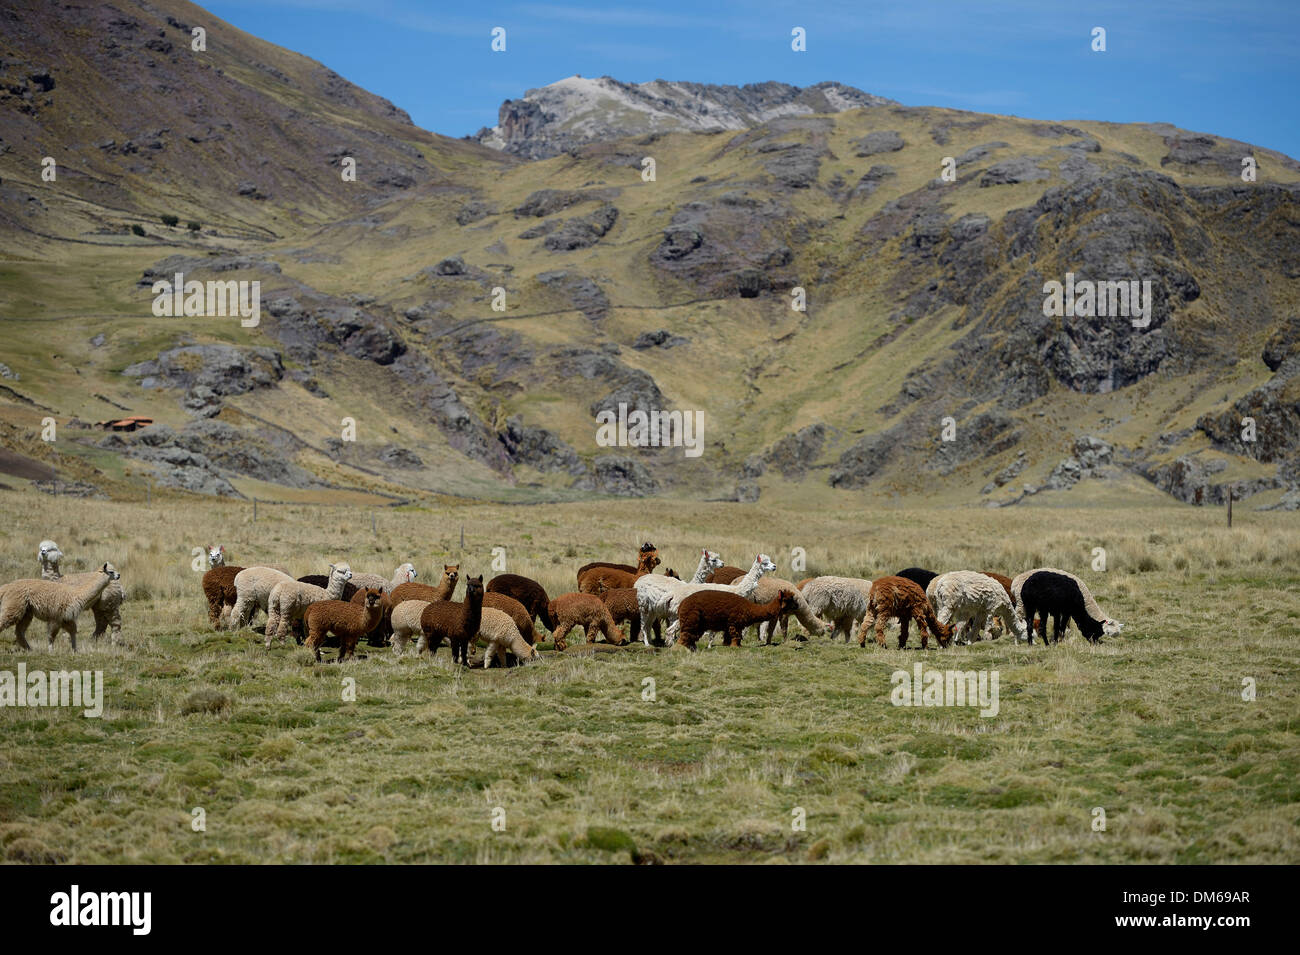 Troupeau de lama sur un pâturage dans les Andes, Quispillaccta, Ayacucho, Pérou Banque D'Images